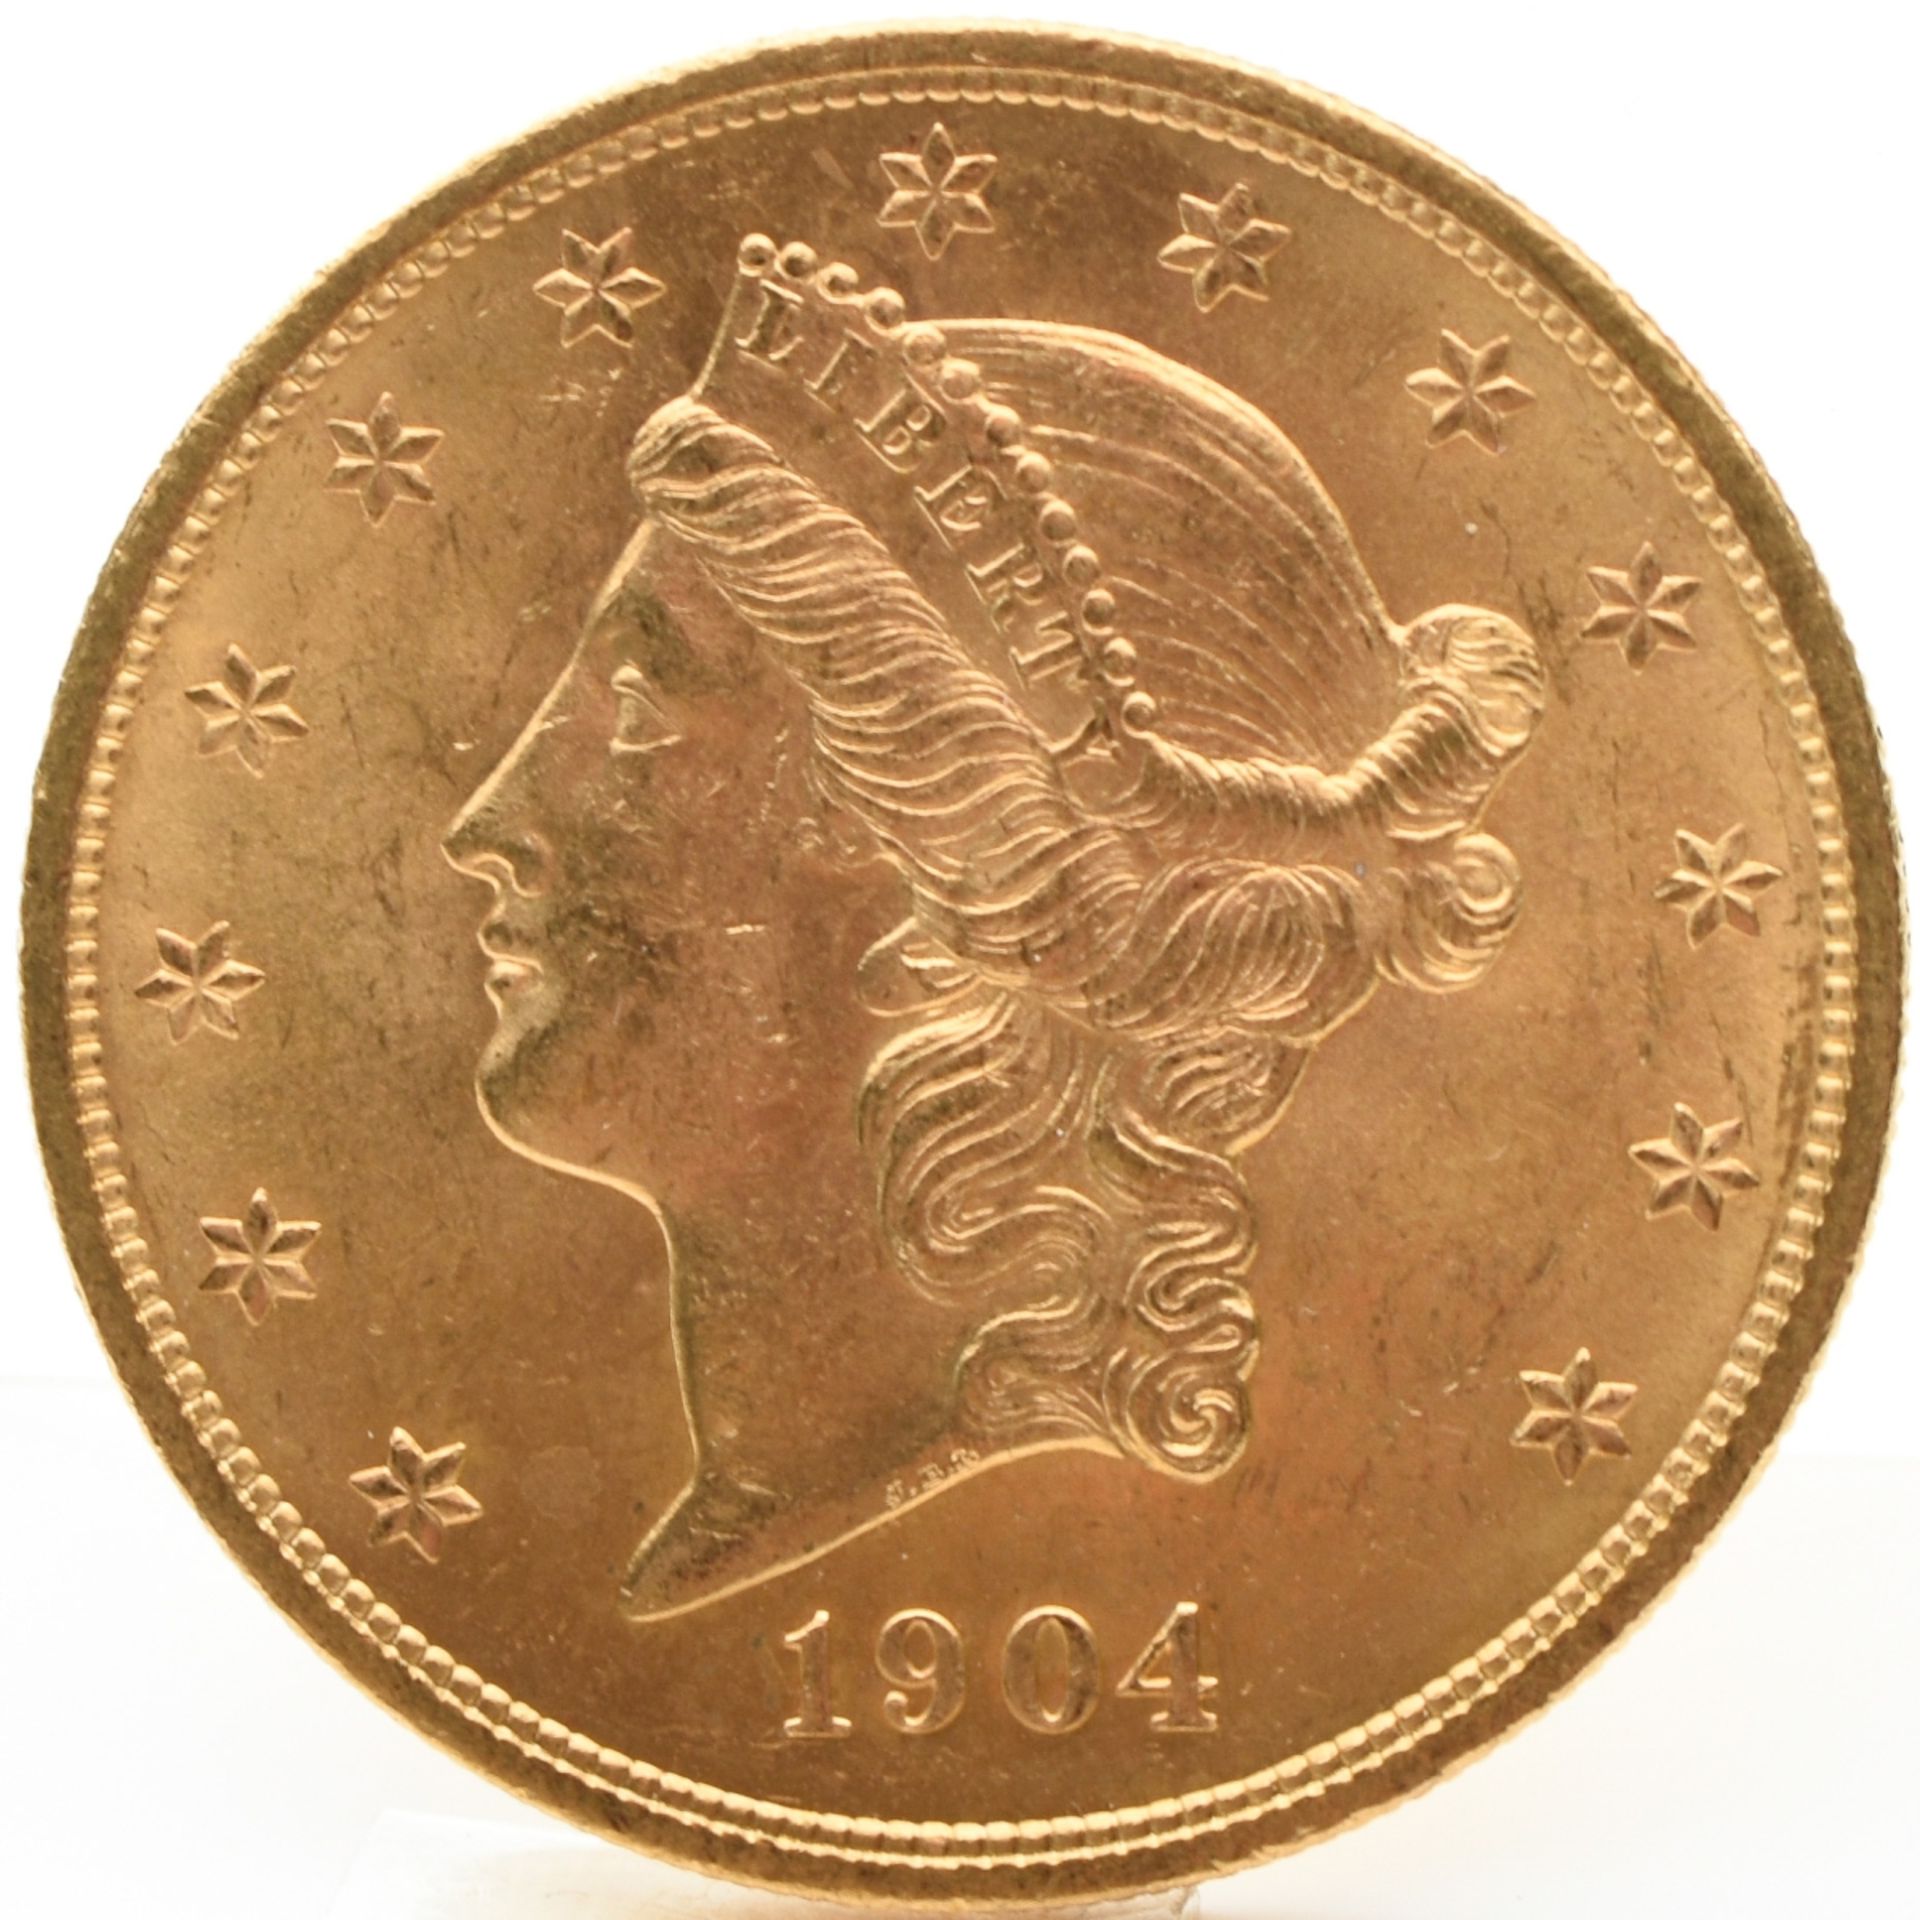 20 US-Dollar-Münze